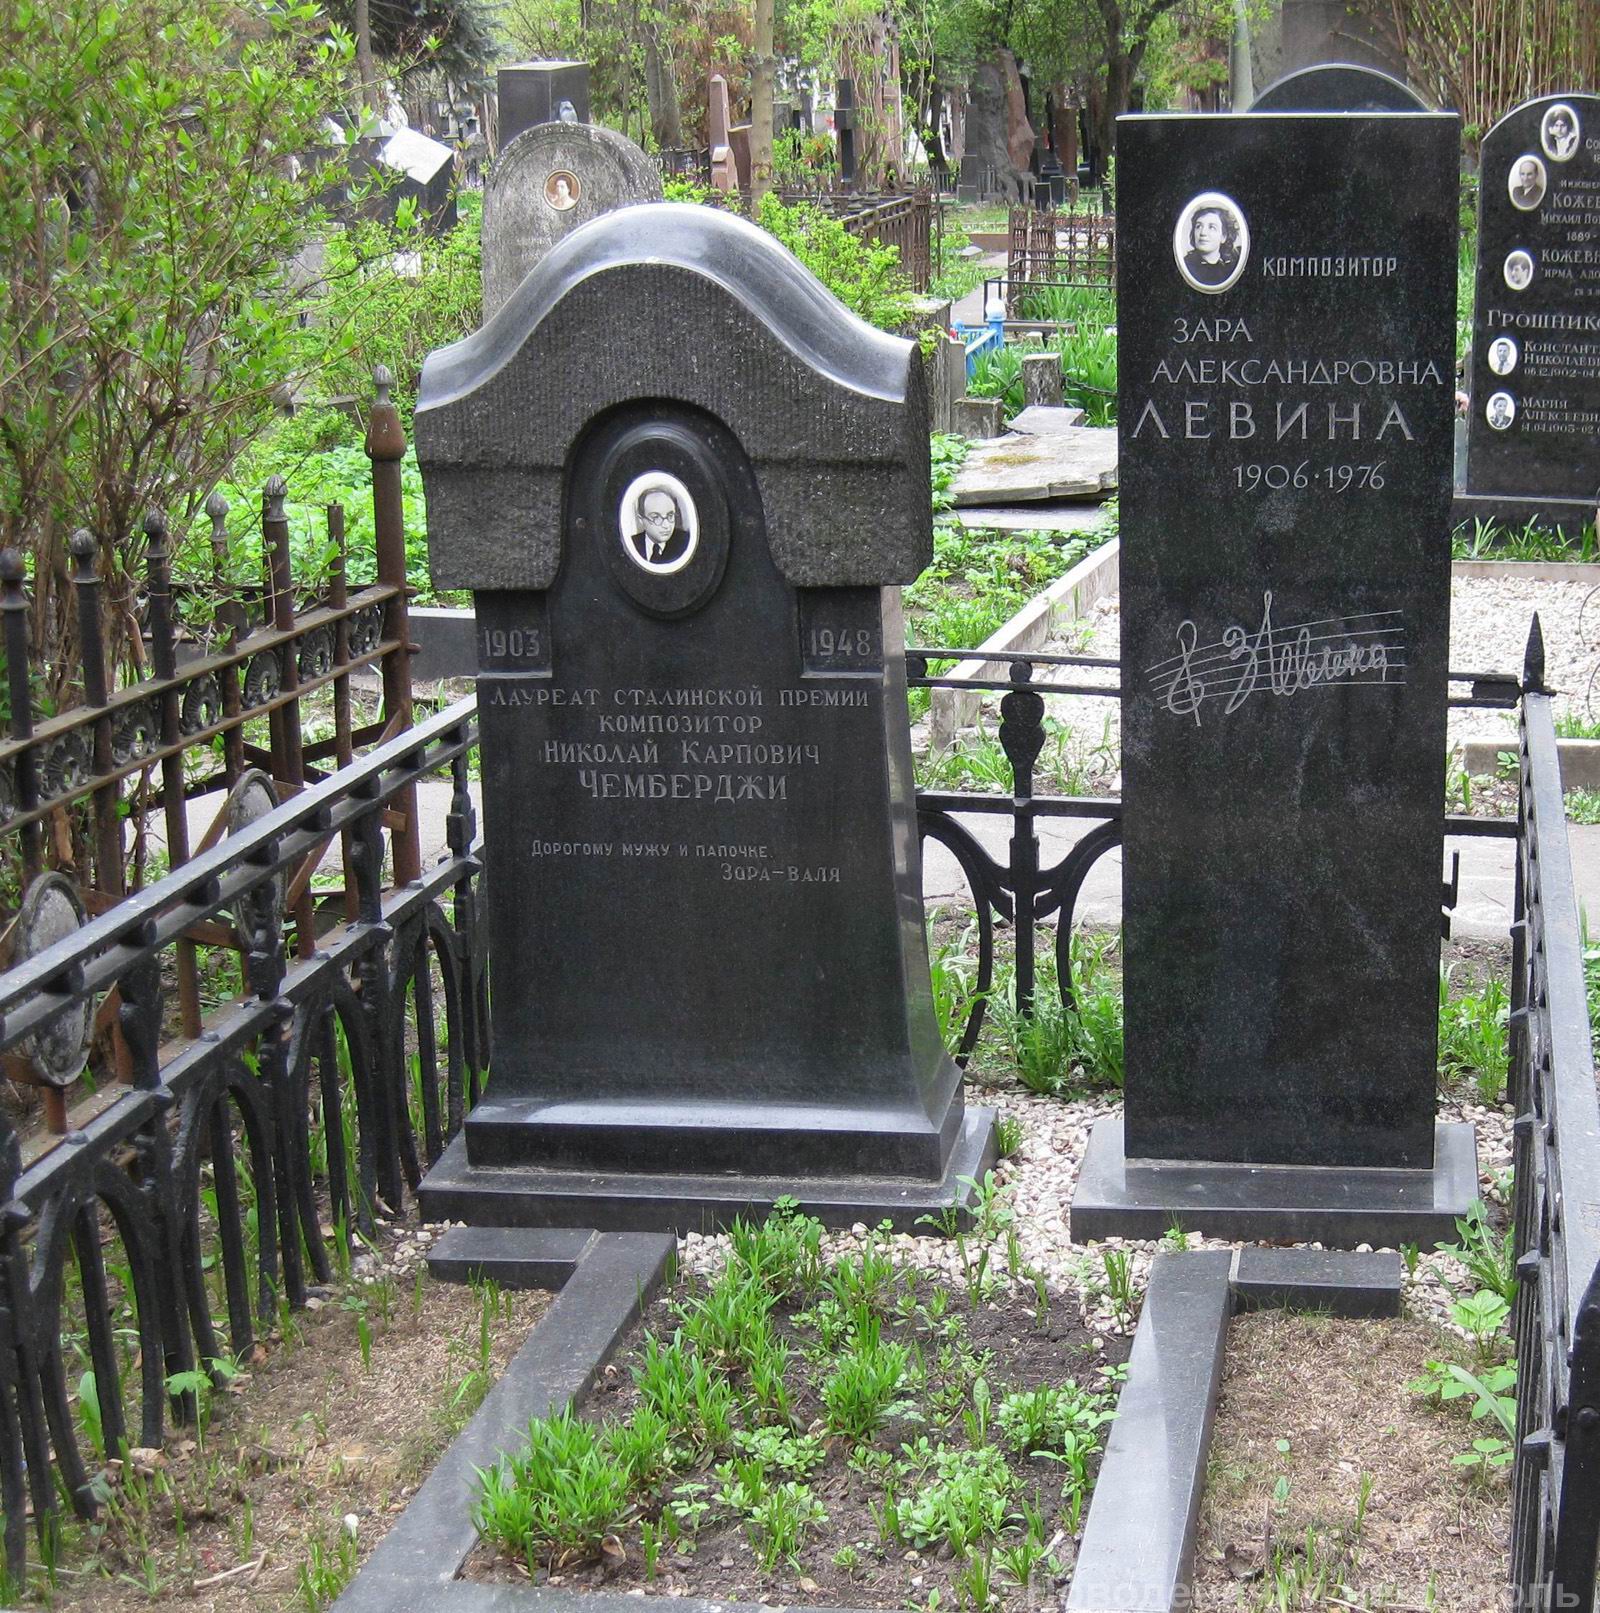 Памятник на могиле Левиной З.А. (1906-1976), на Новодевичьем кладбище (3-62-18).